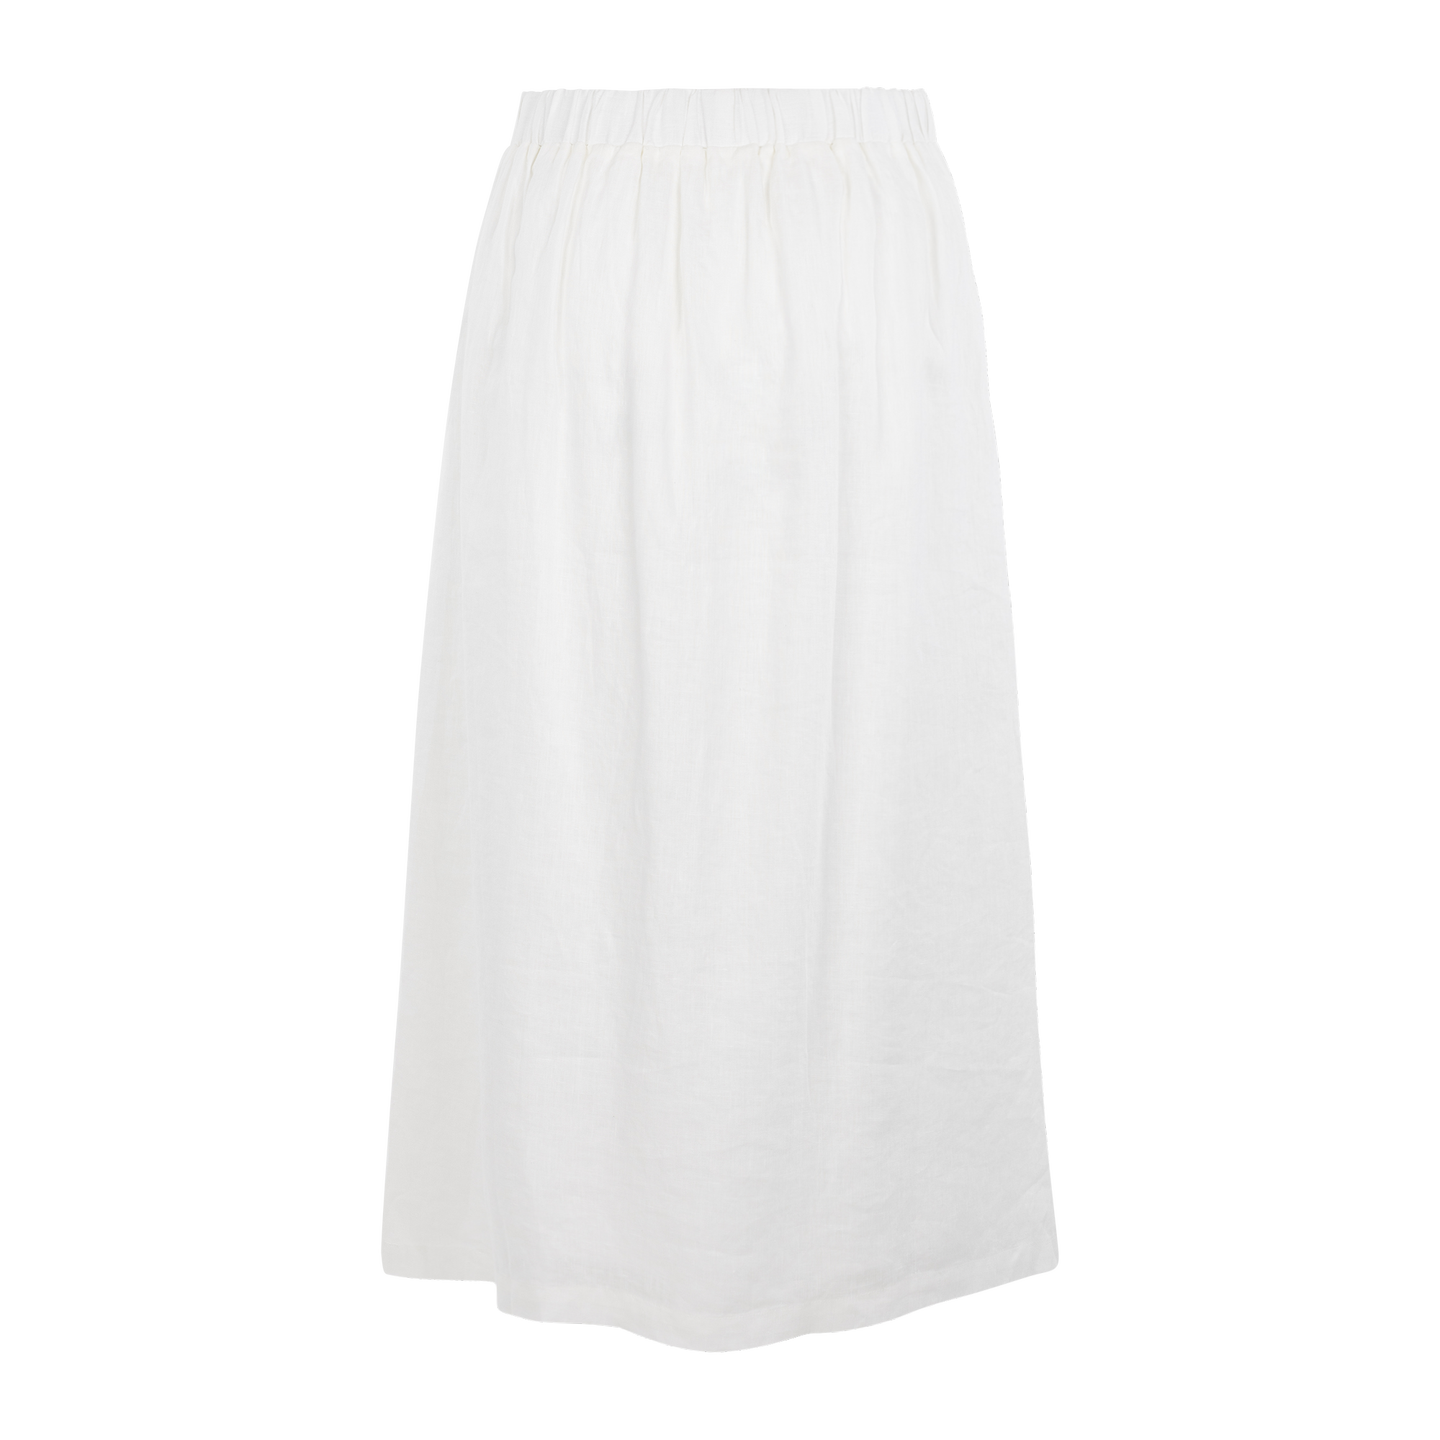 Hilma Skirt - White